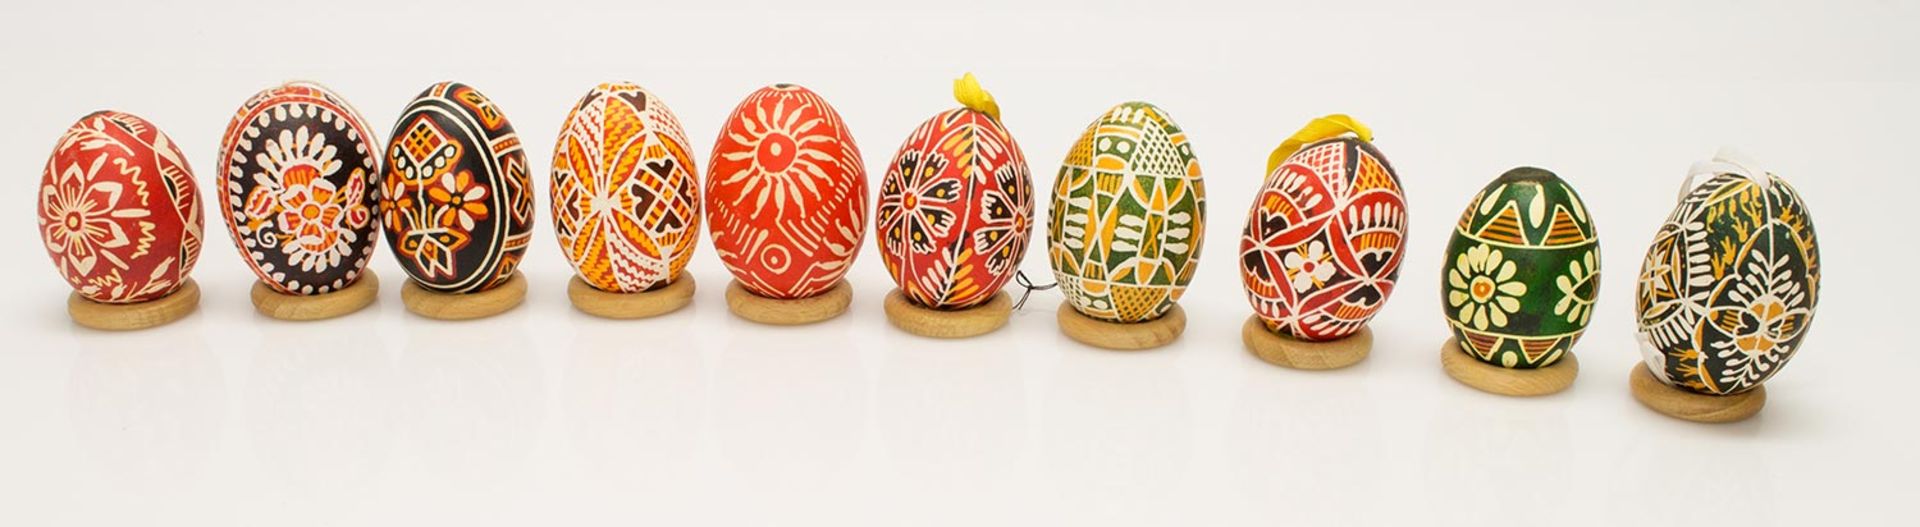 Lot Ostereier10 handverzierte Hühnereier nach traditionell ukrainischer „Pysanka“-Art, farbenfrohe